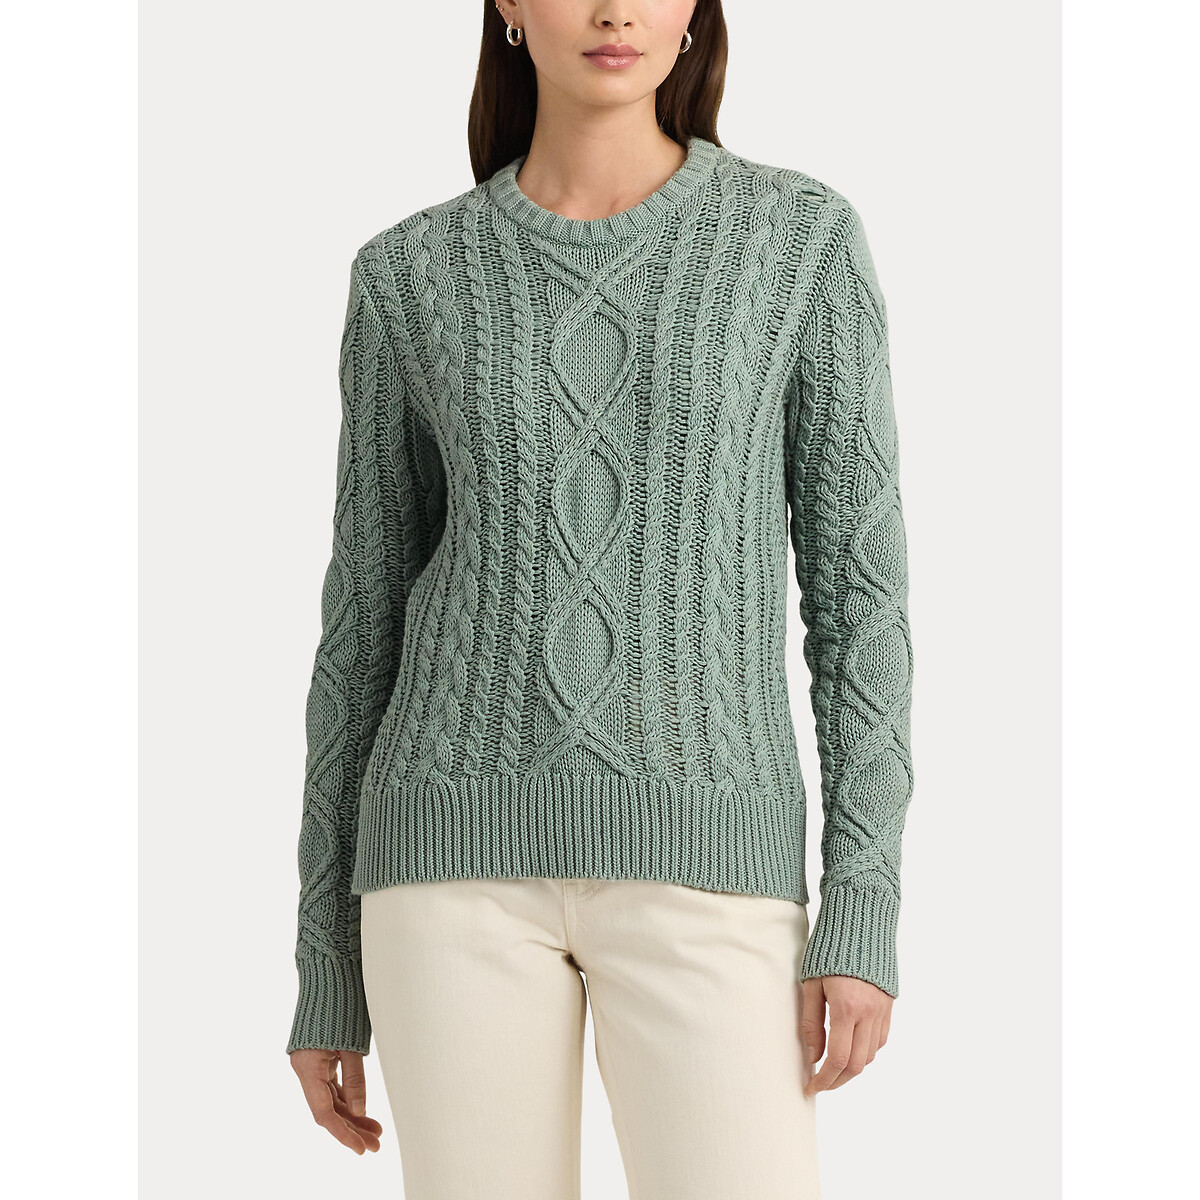 Пуловер с витым узором и круглым вырезом из хлопкового трикотажа HILVAITE XL зеленый пуловер с витым узором m синий